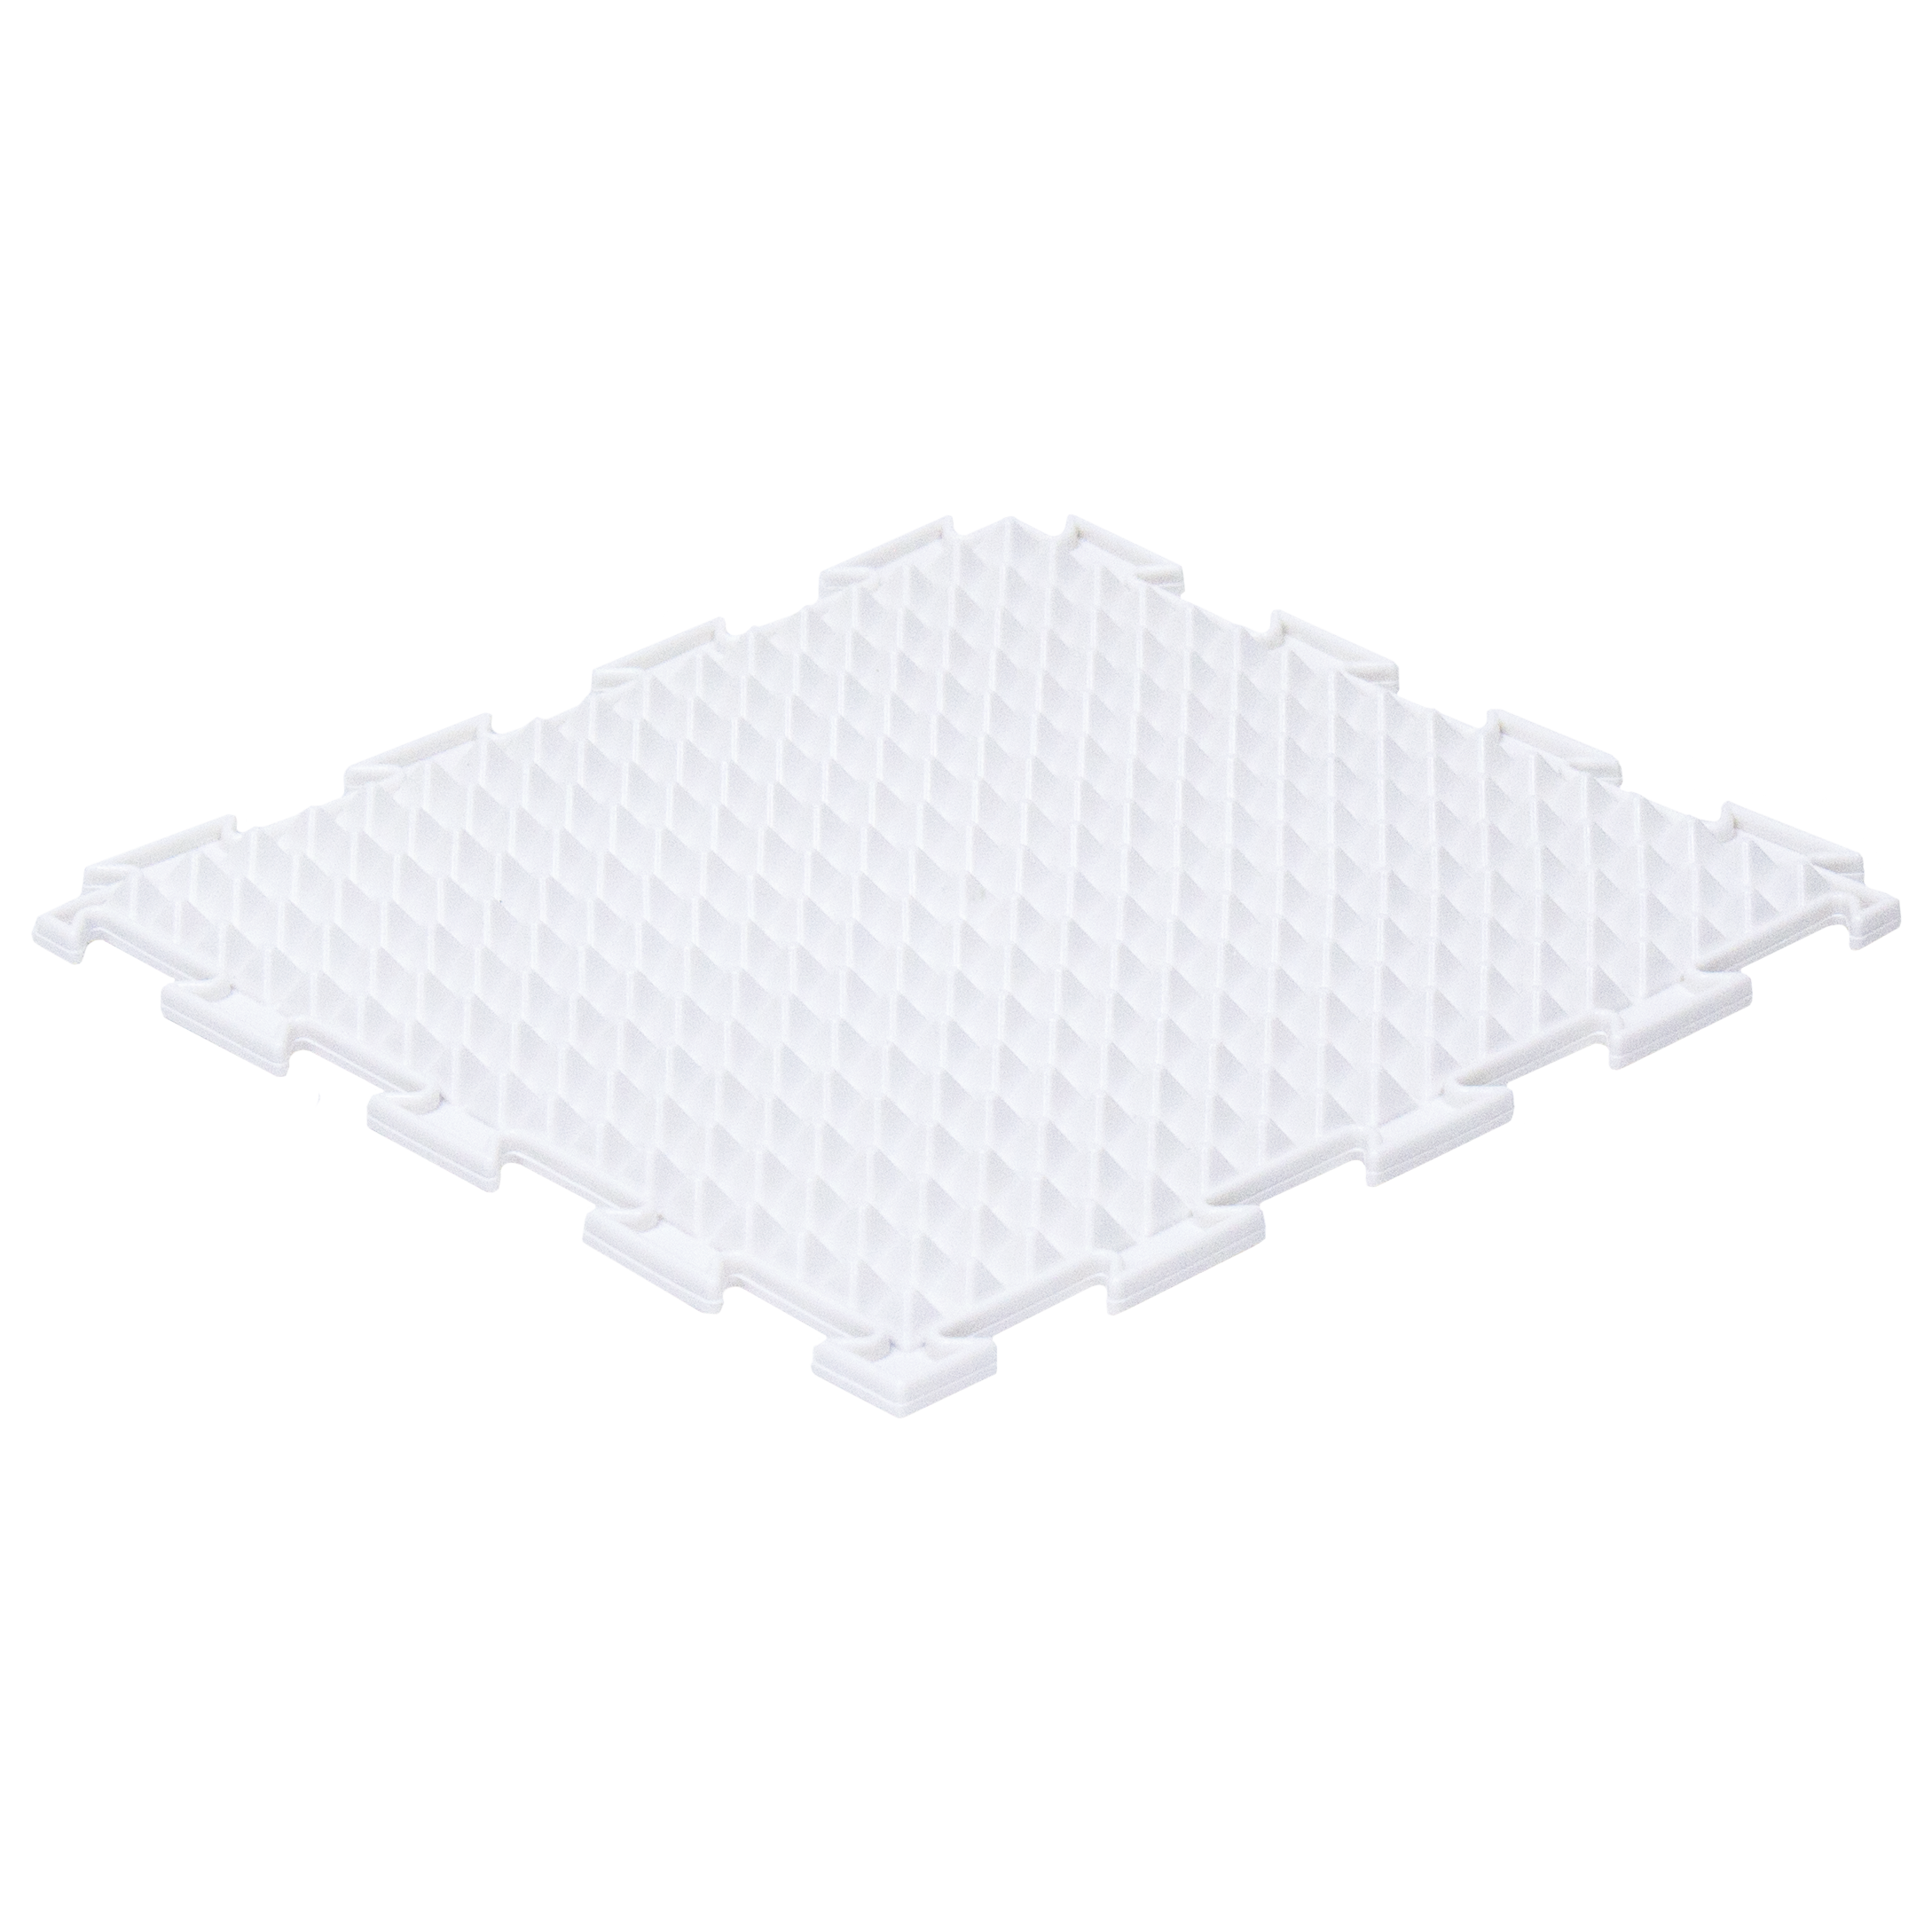 Массажный детский коврик пазл Ортодон развивающий игровой Льдинки жесткий белый 1 пазл - фото 1